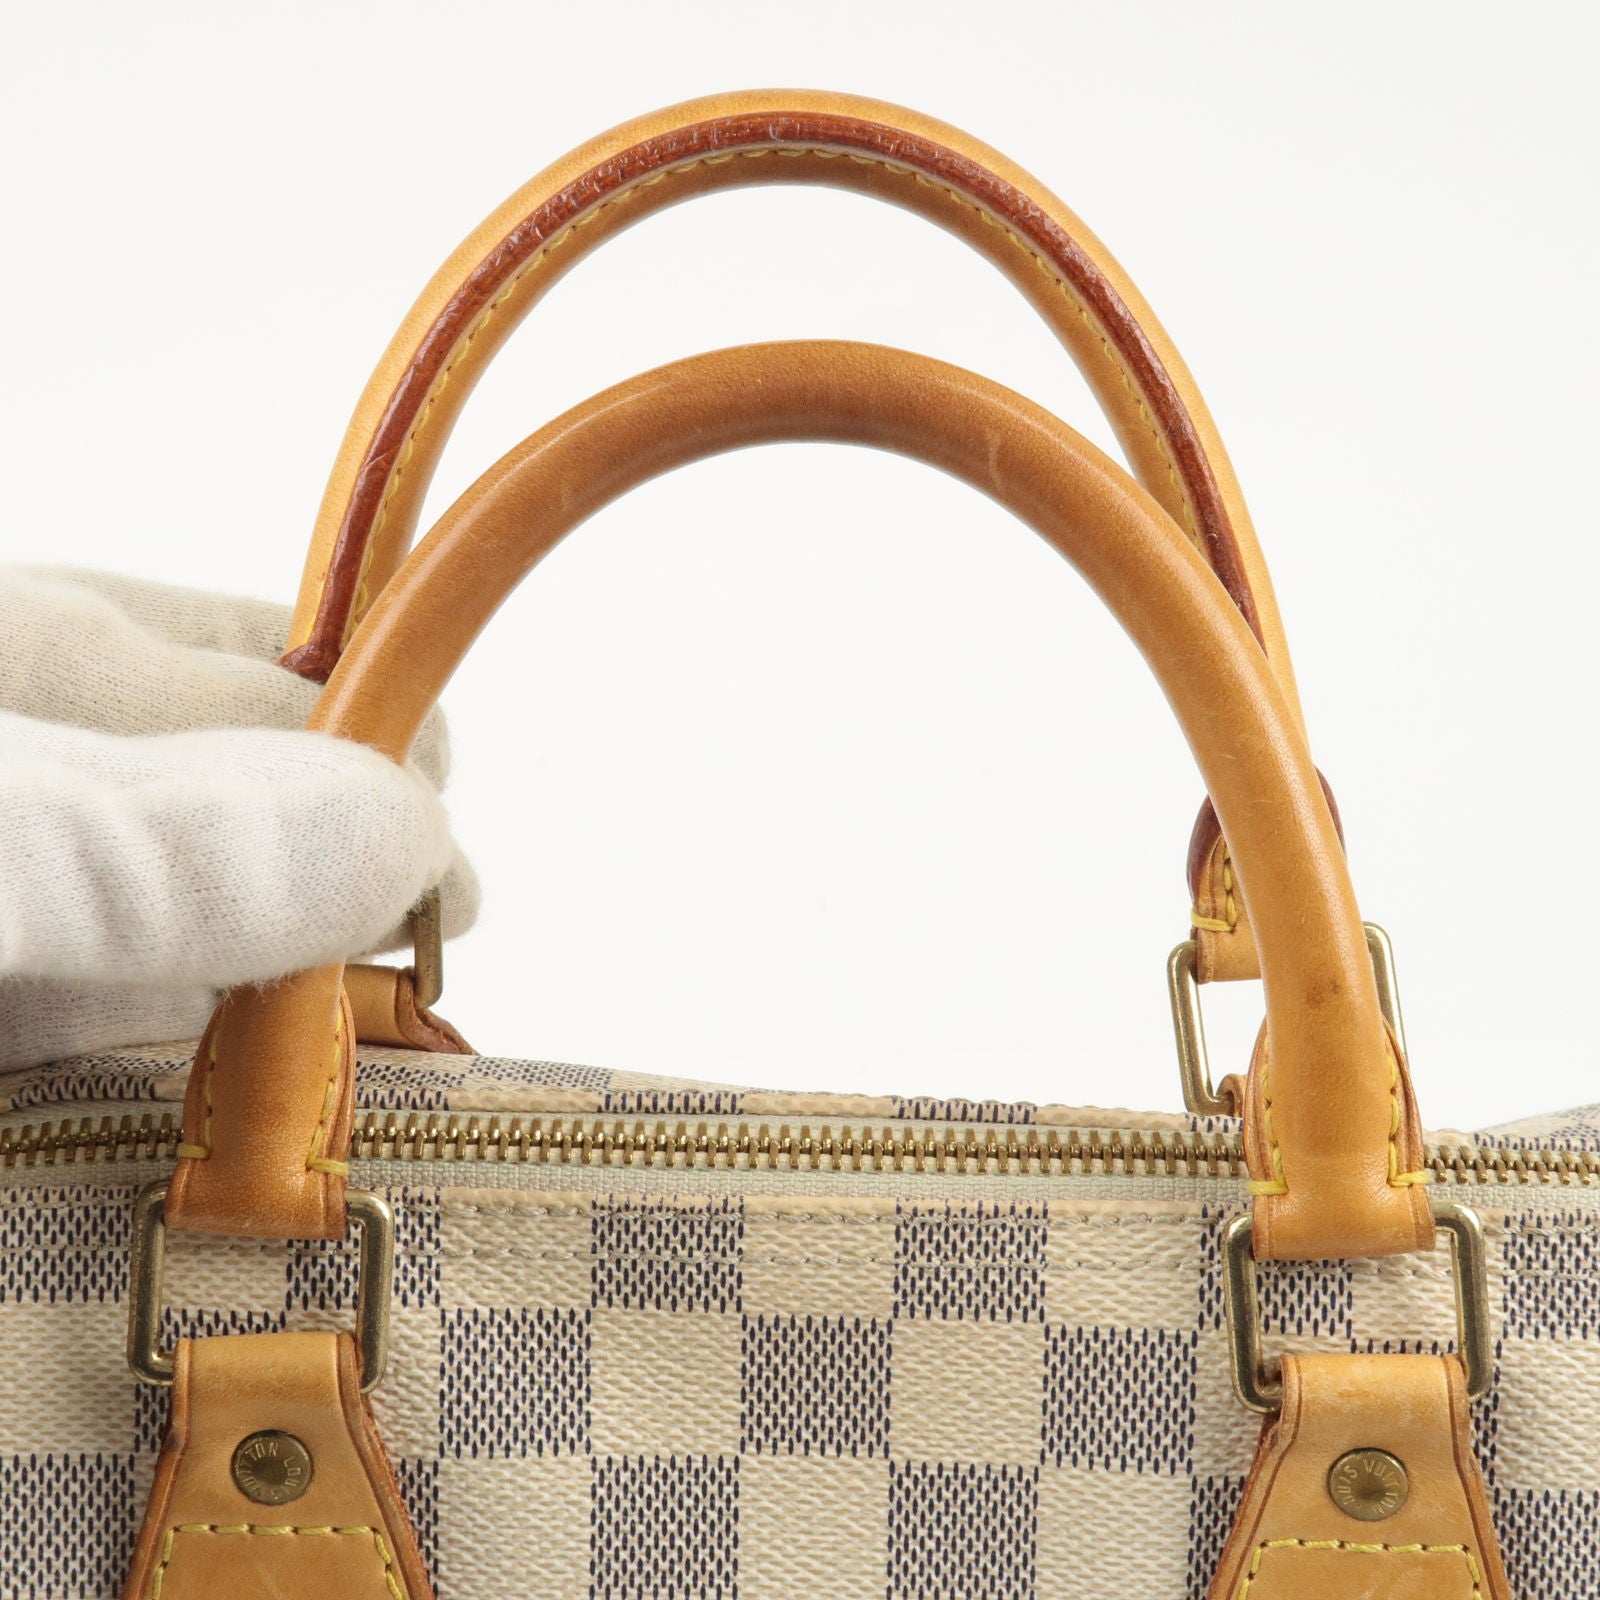 Genuine Louis Vuitton speedy 30 Damier Azur satchel bag